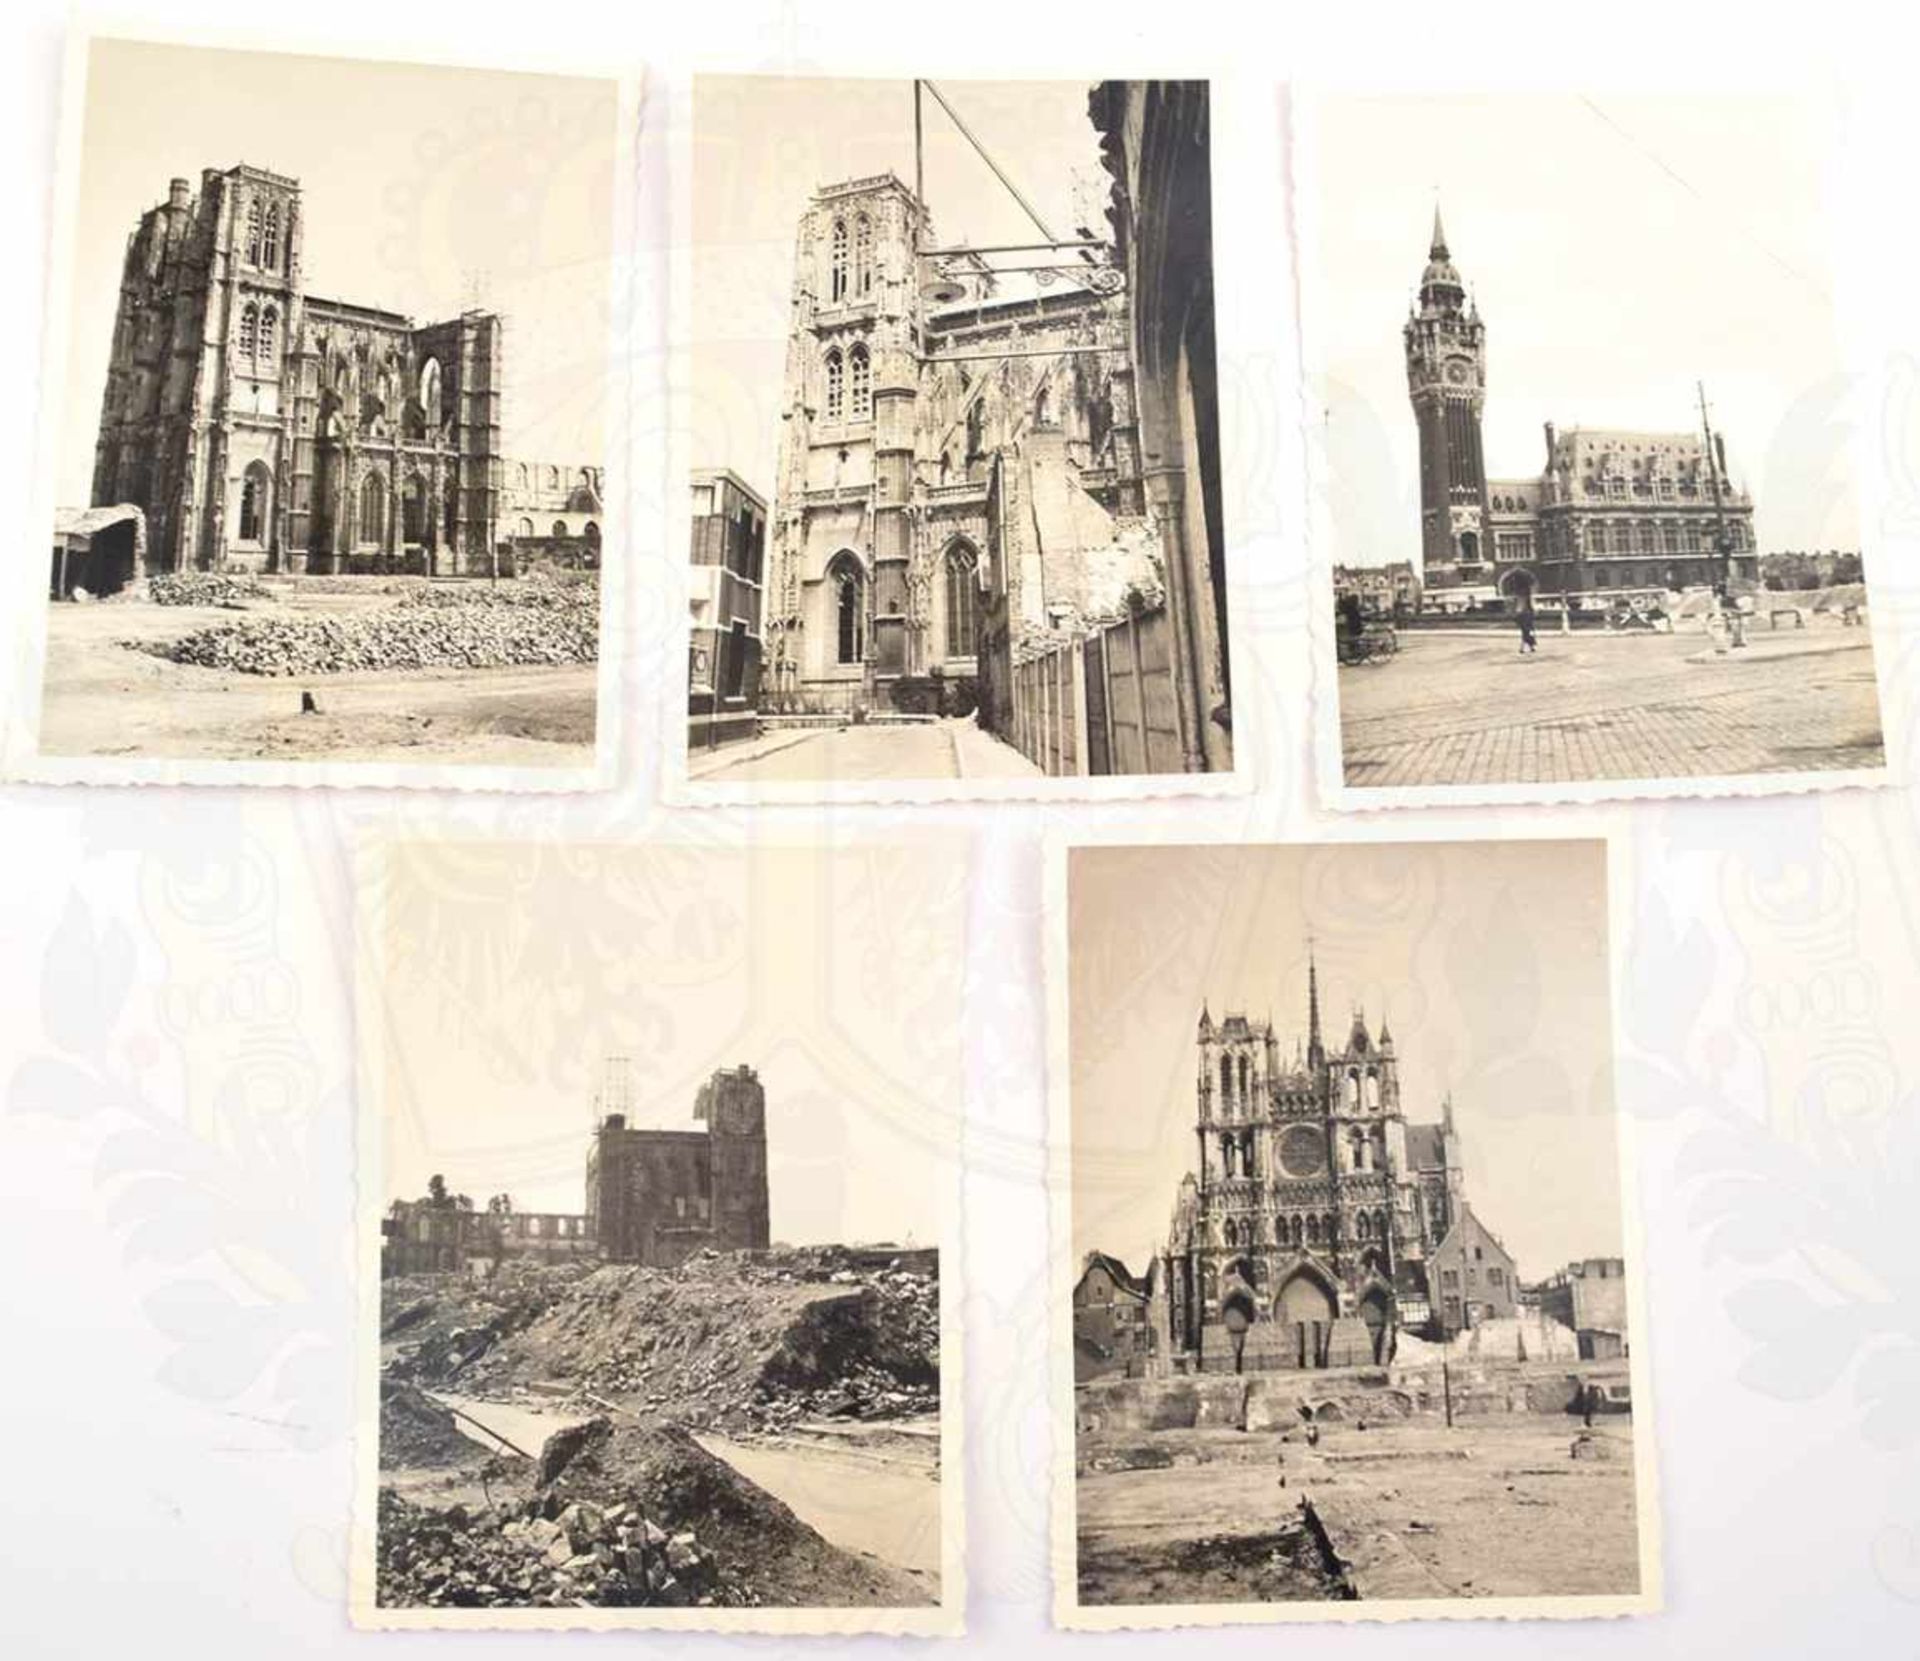 53 FOTOS BESETZTES FRANKREICH, 1941, Laon, Amiens, Abbeville, Calais u. Reims, Ruinen aus dem - Bild 2 aus 2